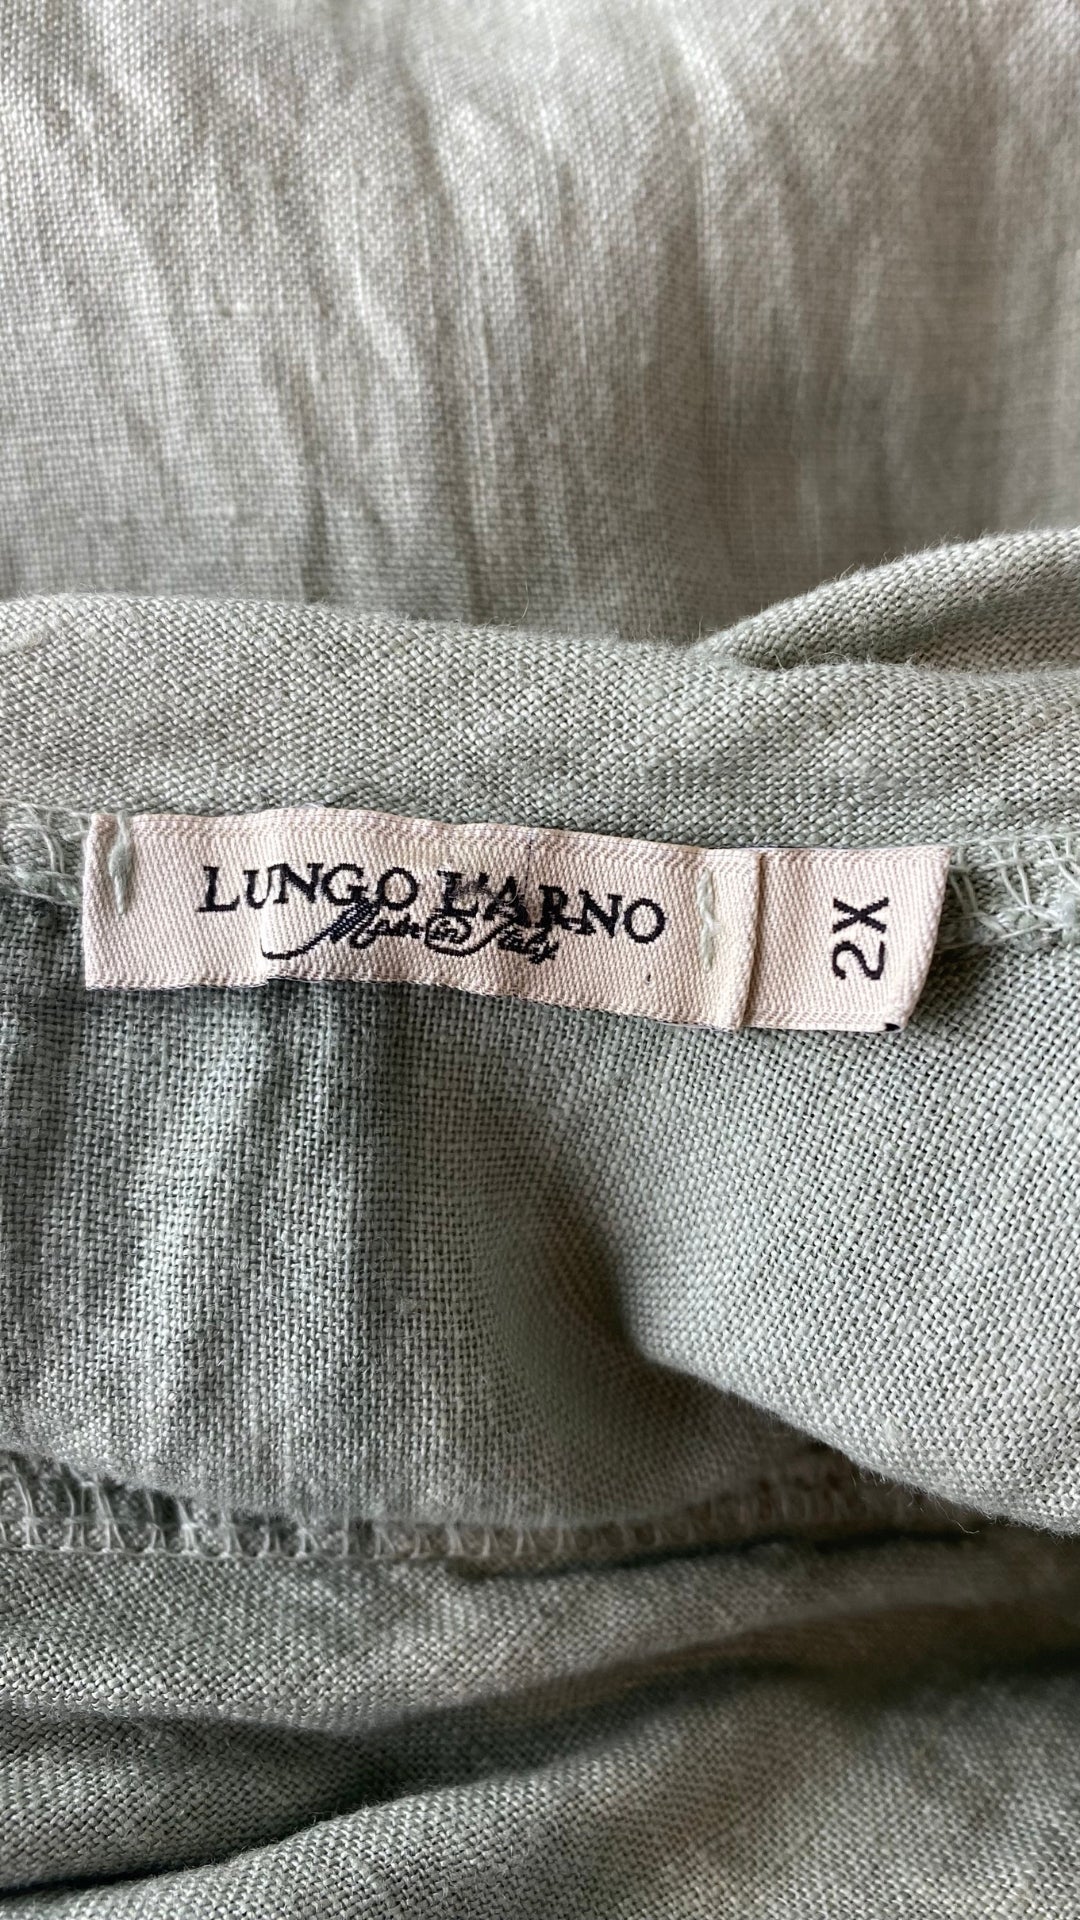 Robe sauge en lin brodé avec poches, taille 2X. Vue de l'étiquette de marque et taille.